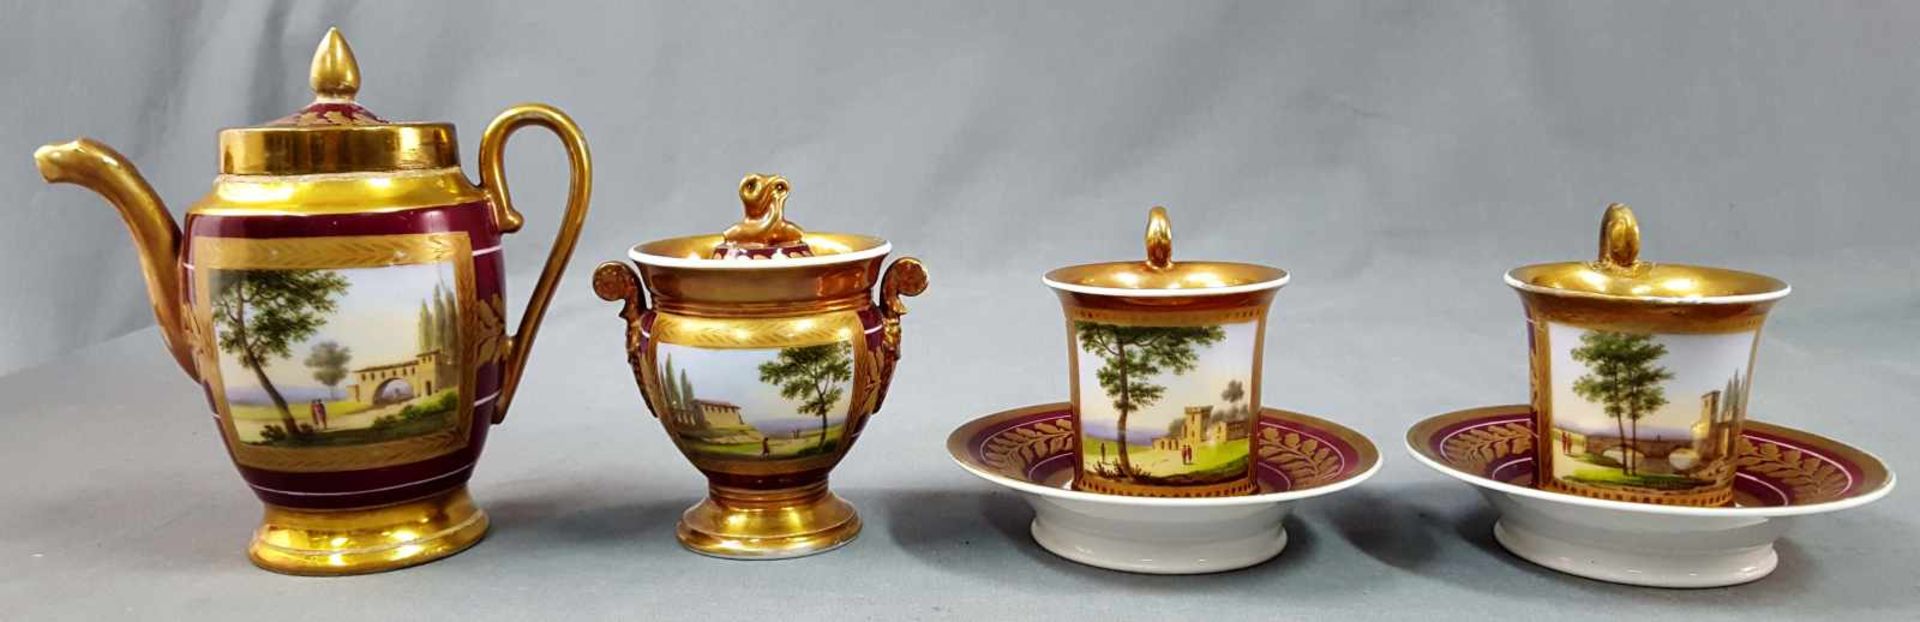 11 parts of Meissen porcelain. Up to 27 cm high. - Bild 6 aus 14